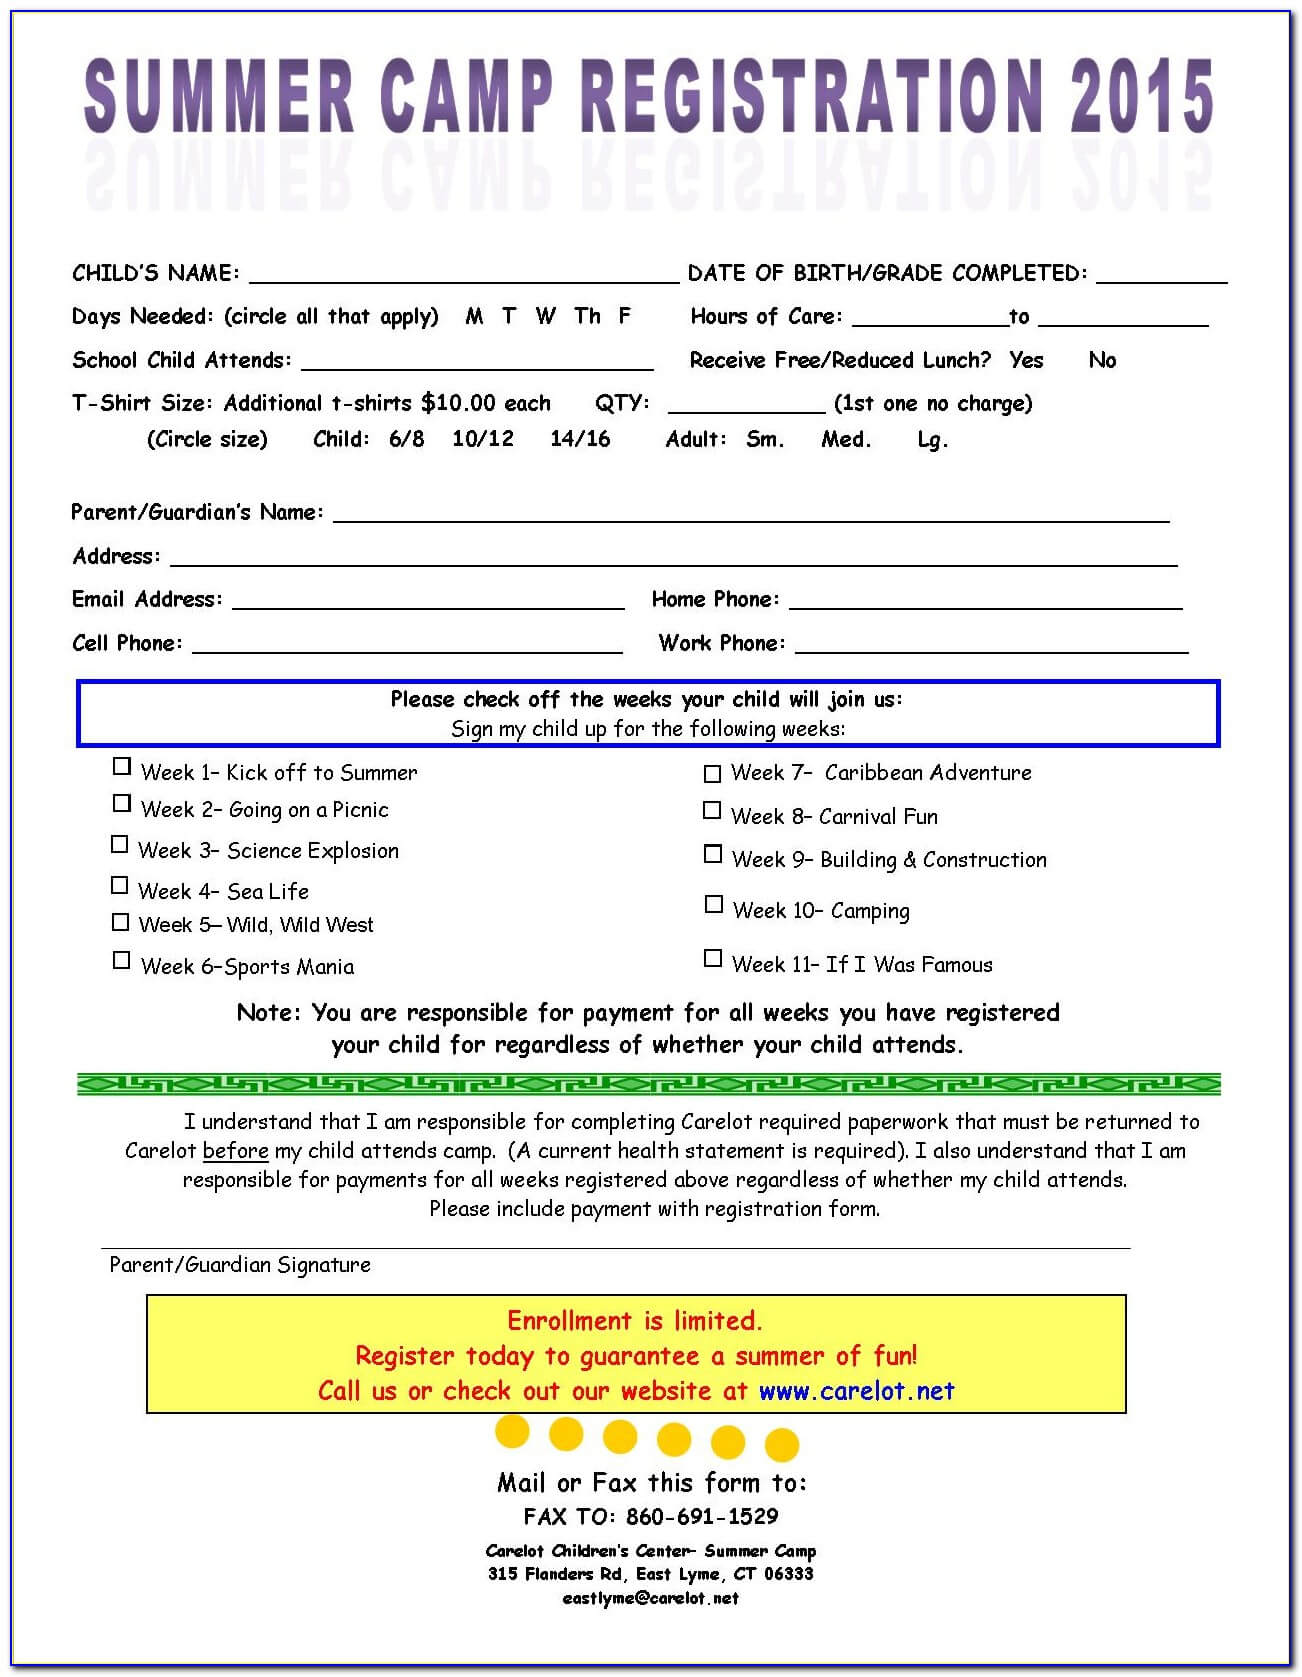 Summer Camp Registration Form Template – Form : Resume Pertaining To Camp Registration Form Template